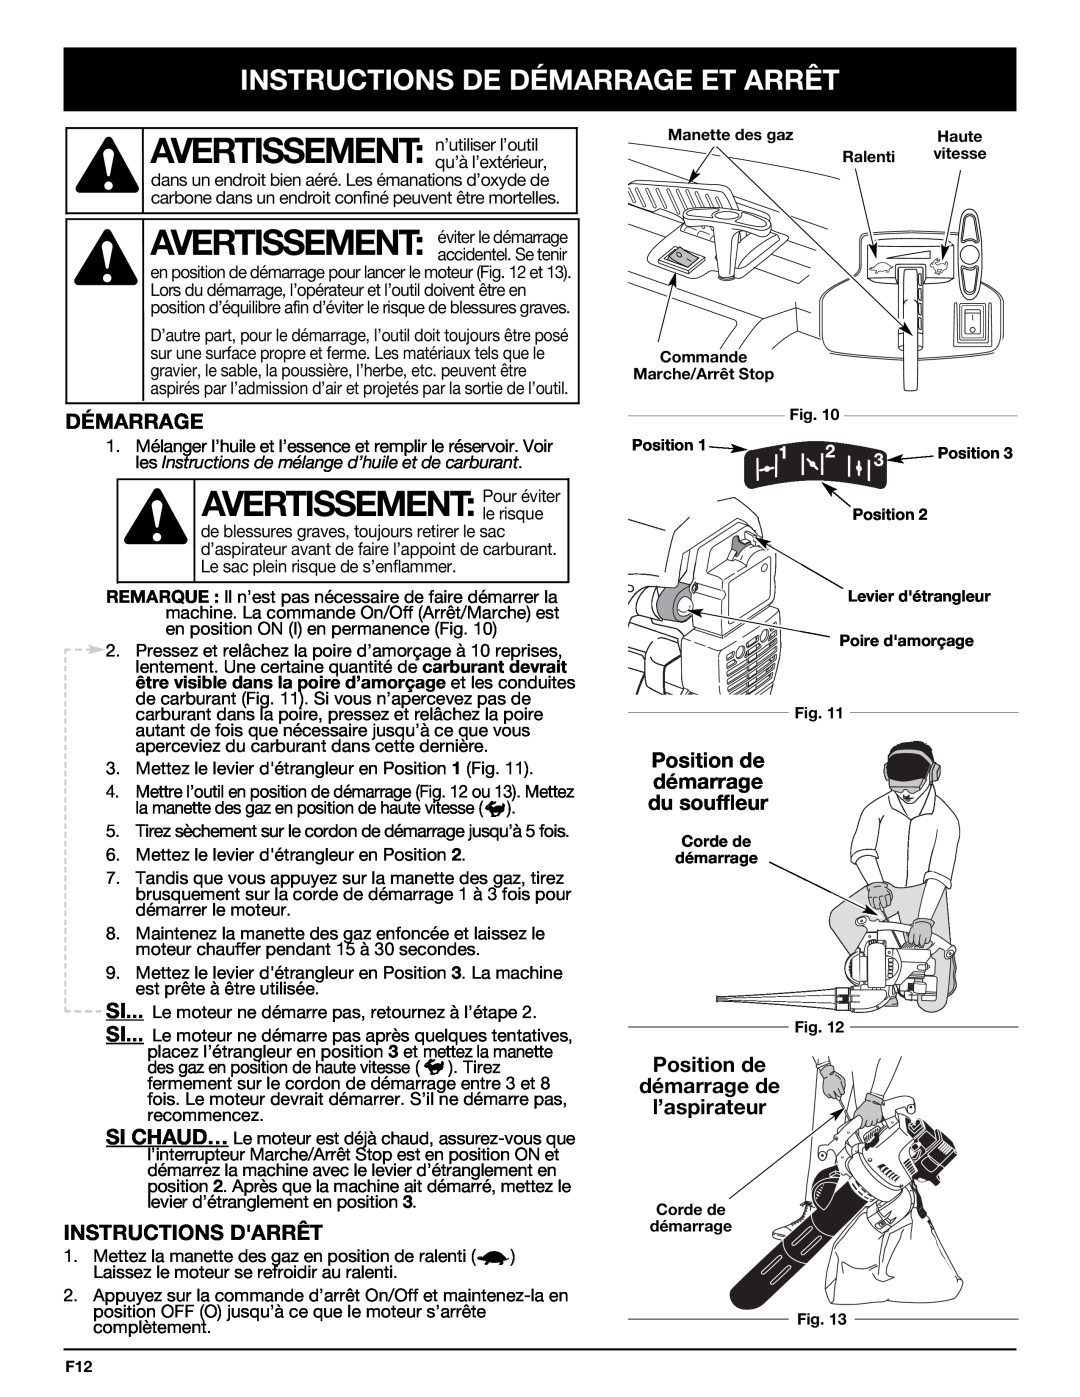 Bolens YM320BV manual AVERTISSEMENT:Pour éviter, Instructions De Démarrage Et Arrêt, Instructions Darrêt 